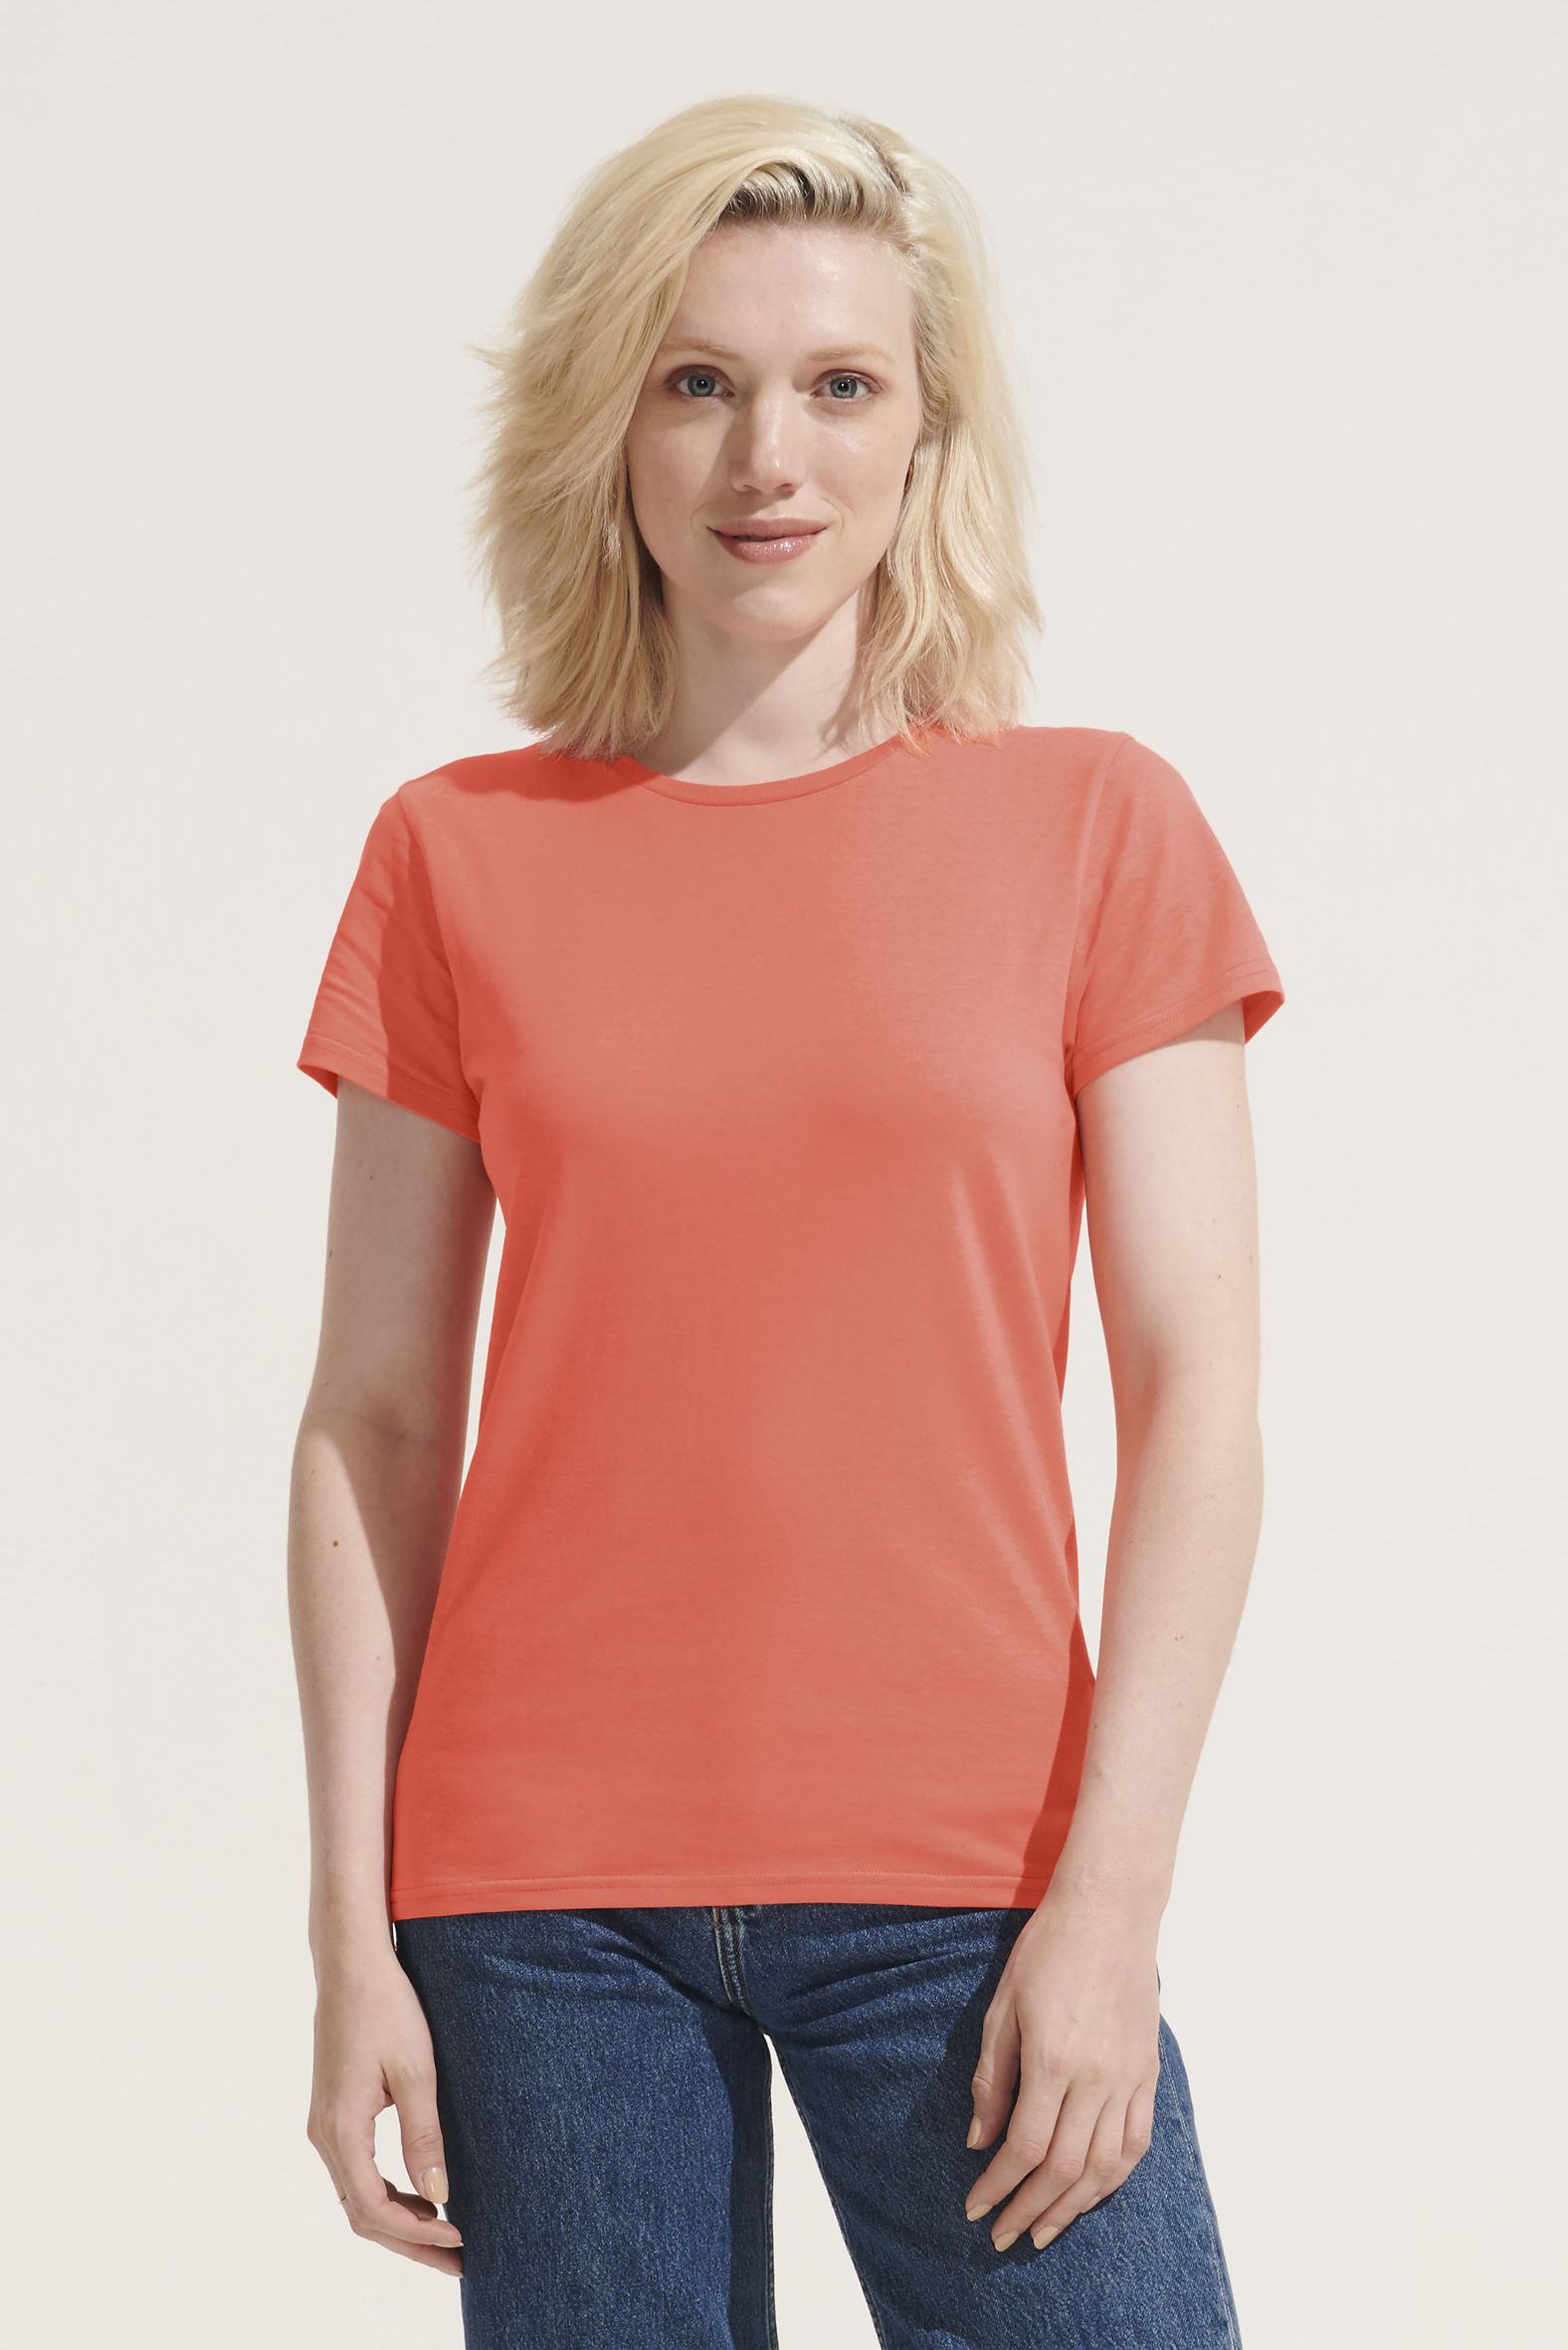 Antídoto Acelerar Interpretación Sols camisetas | catálogo sol s de ropa personalizable